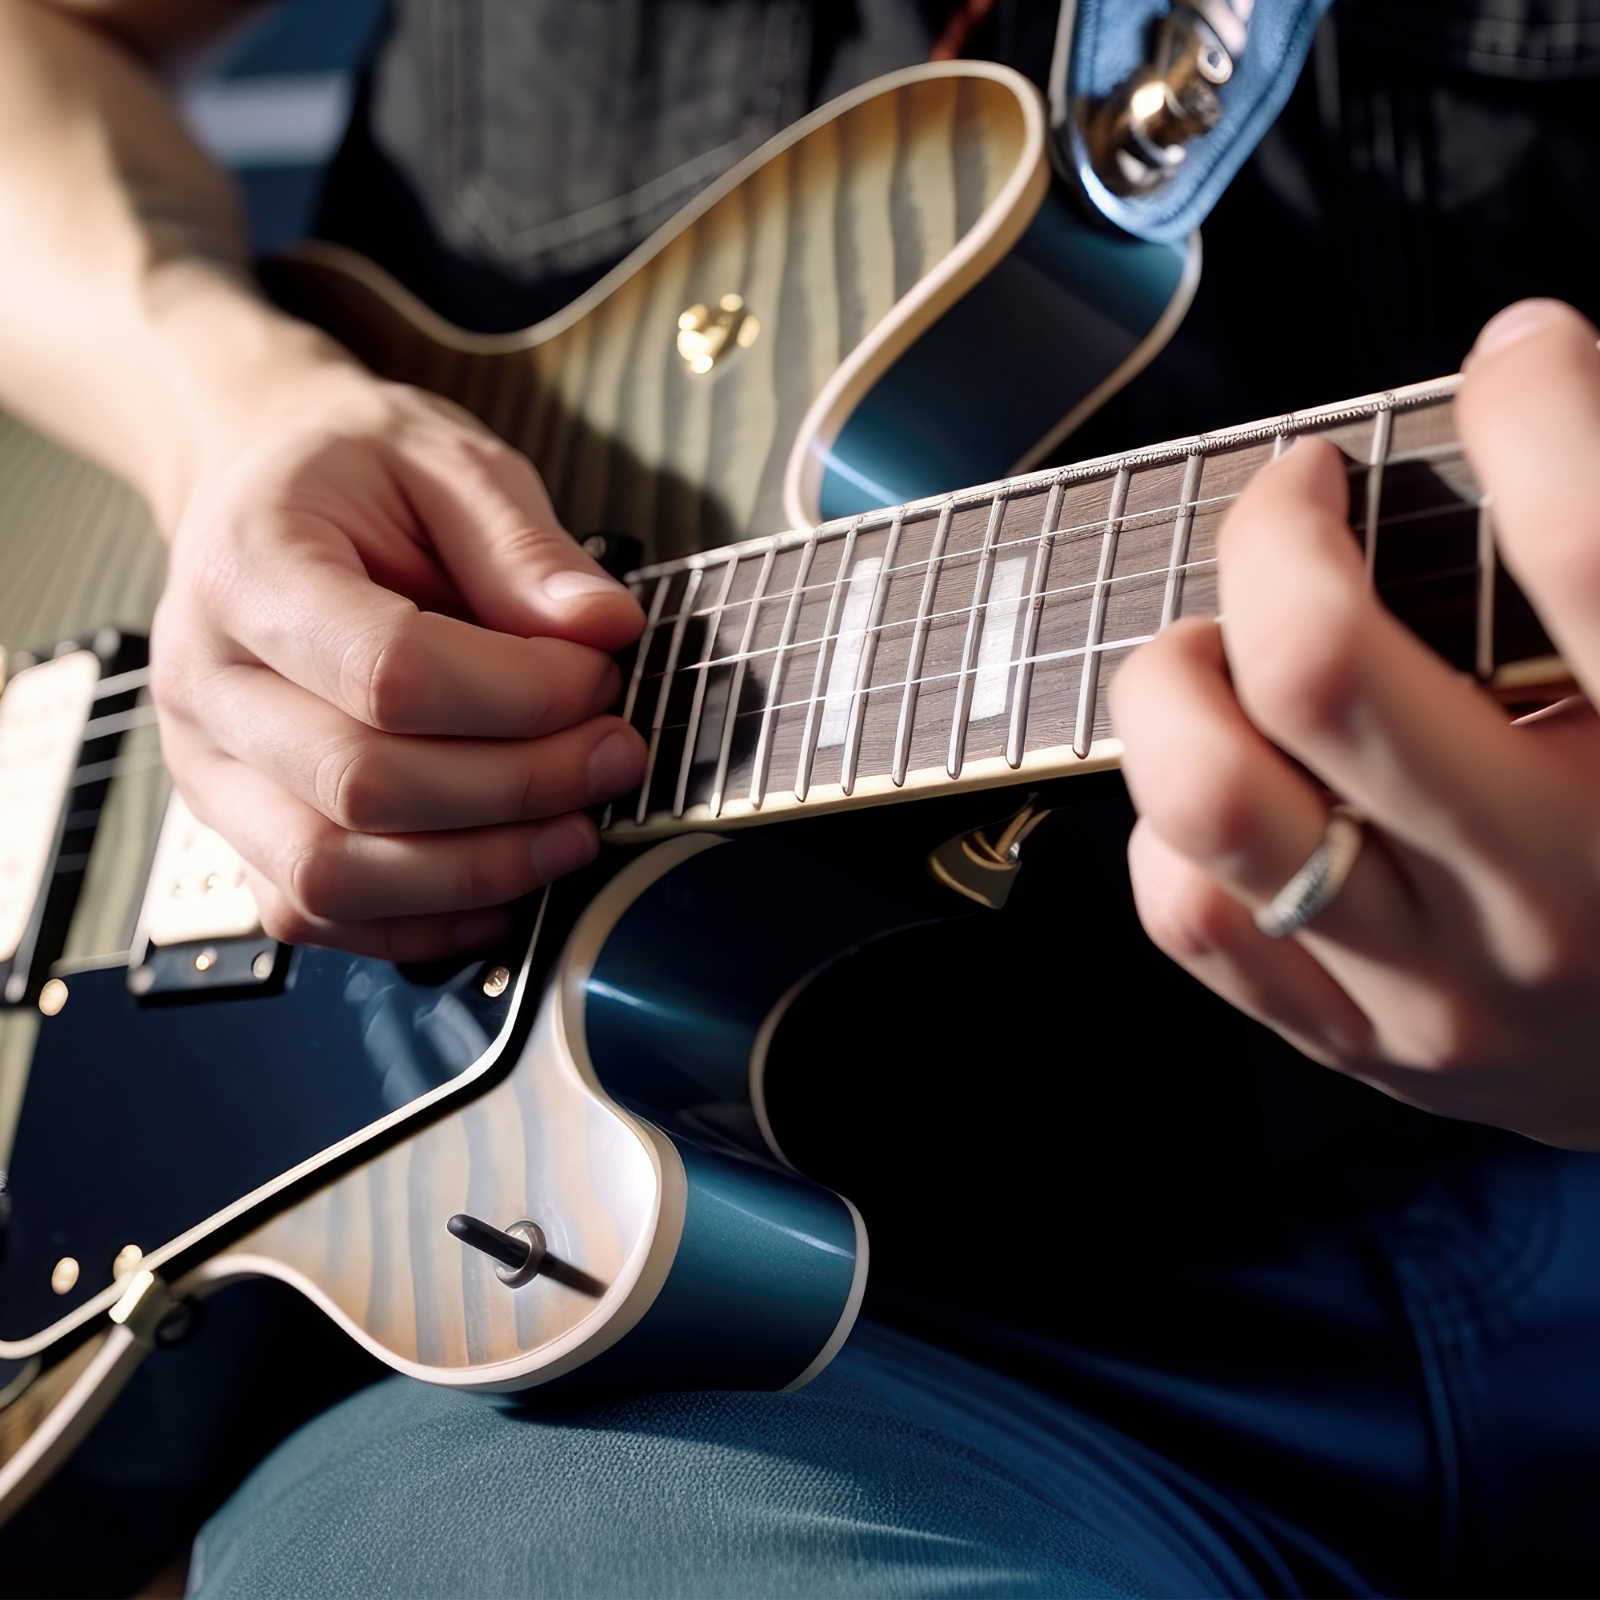 60-minütiger E-Gitarrenunterricht für Kinder : photo 1